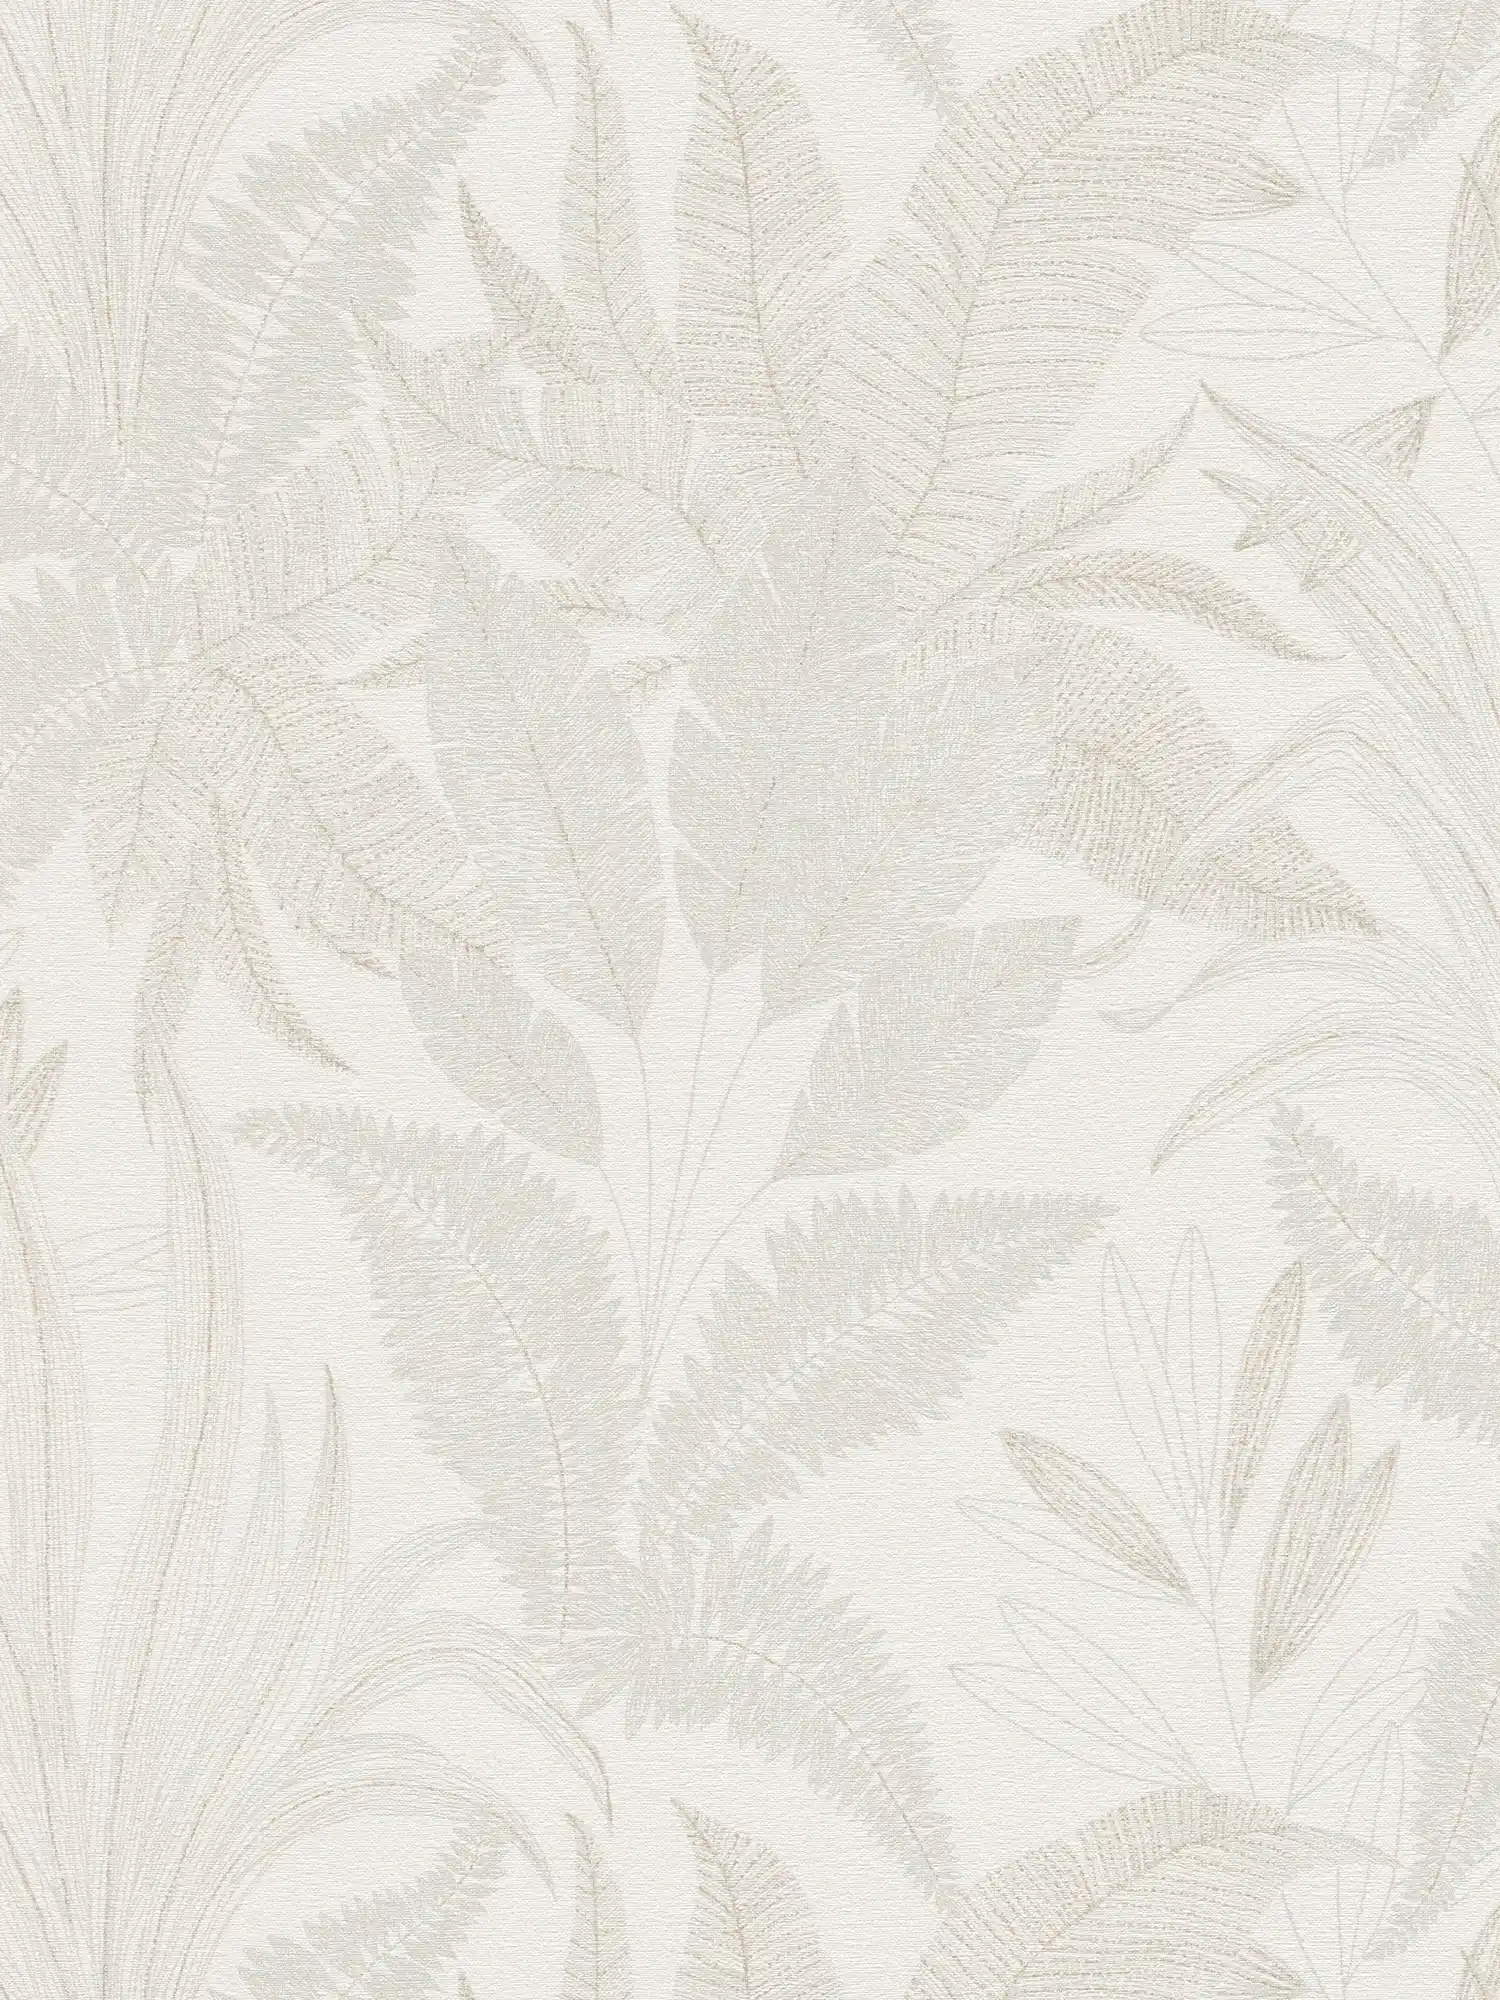 papier peint en papier intissé floral avec motifs de feuilles dans des couleurs douces - crème, beige
